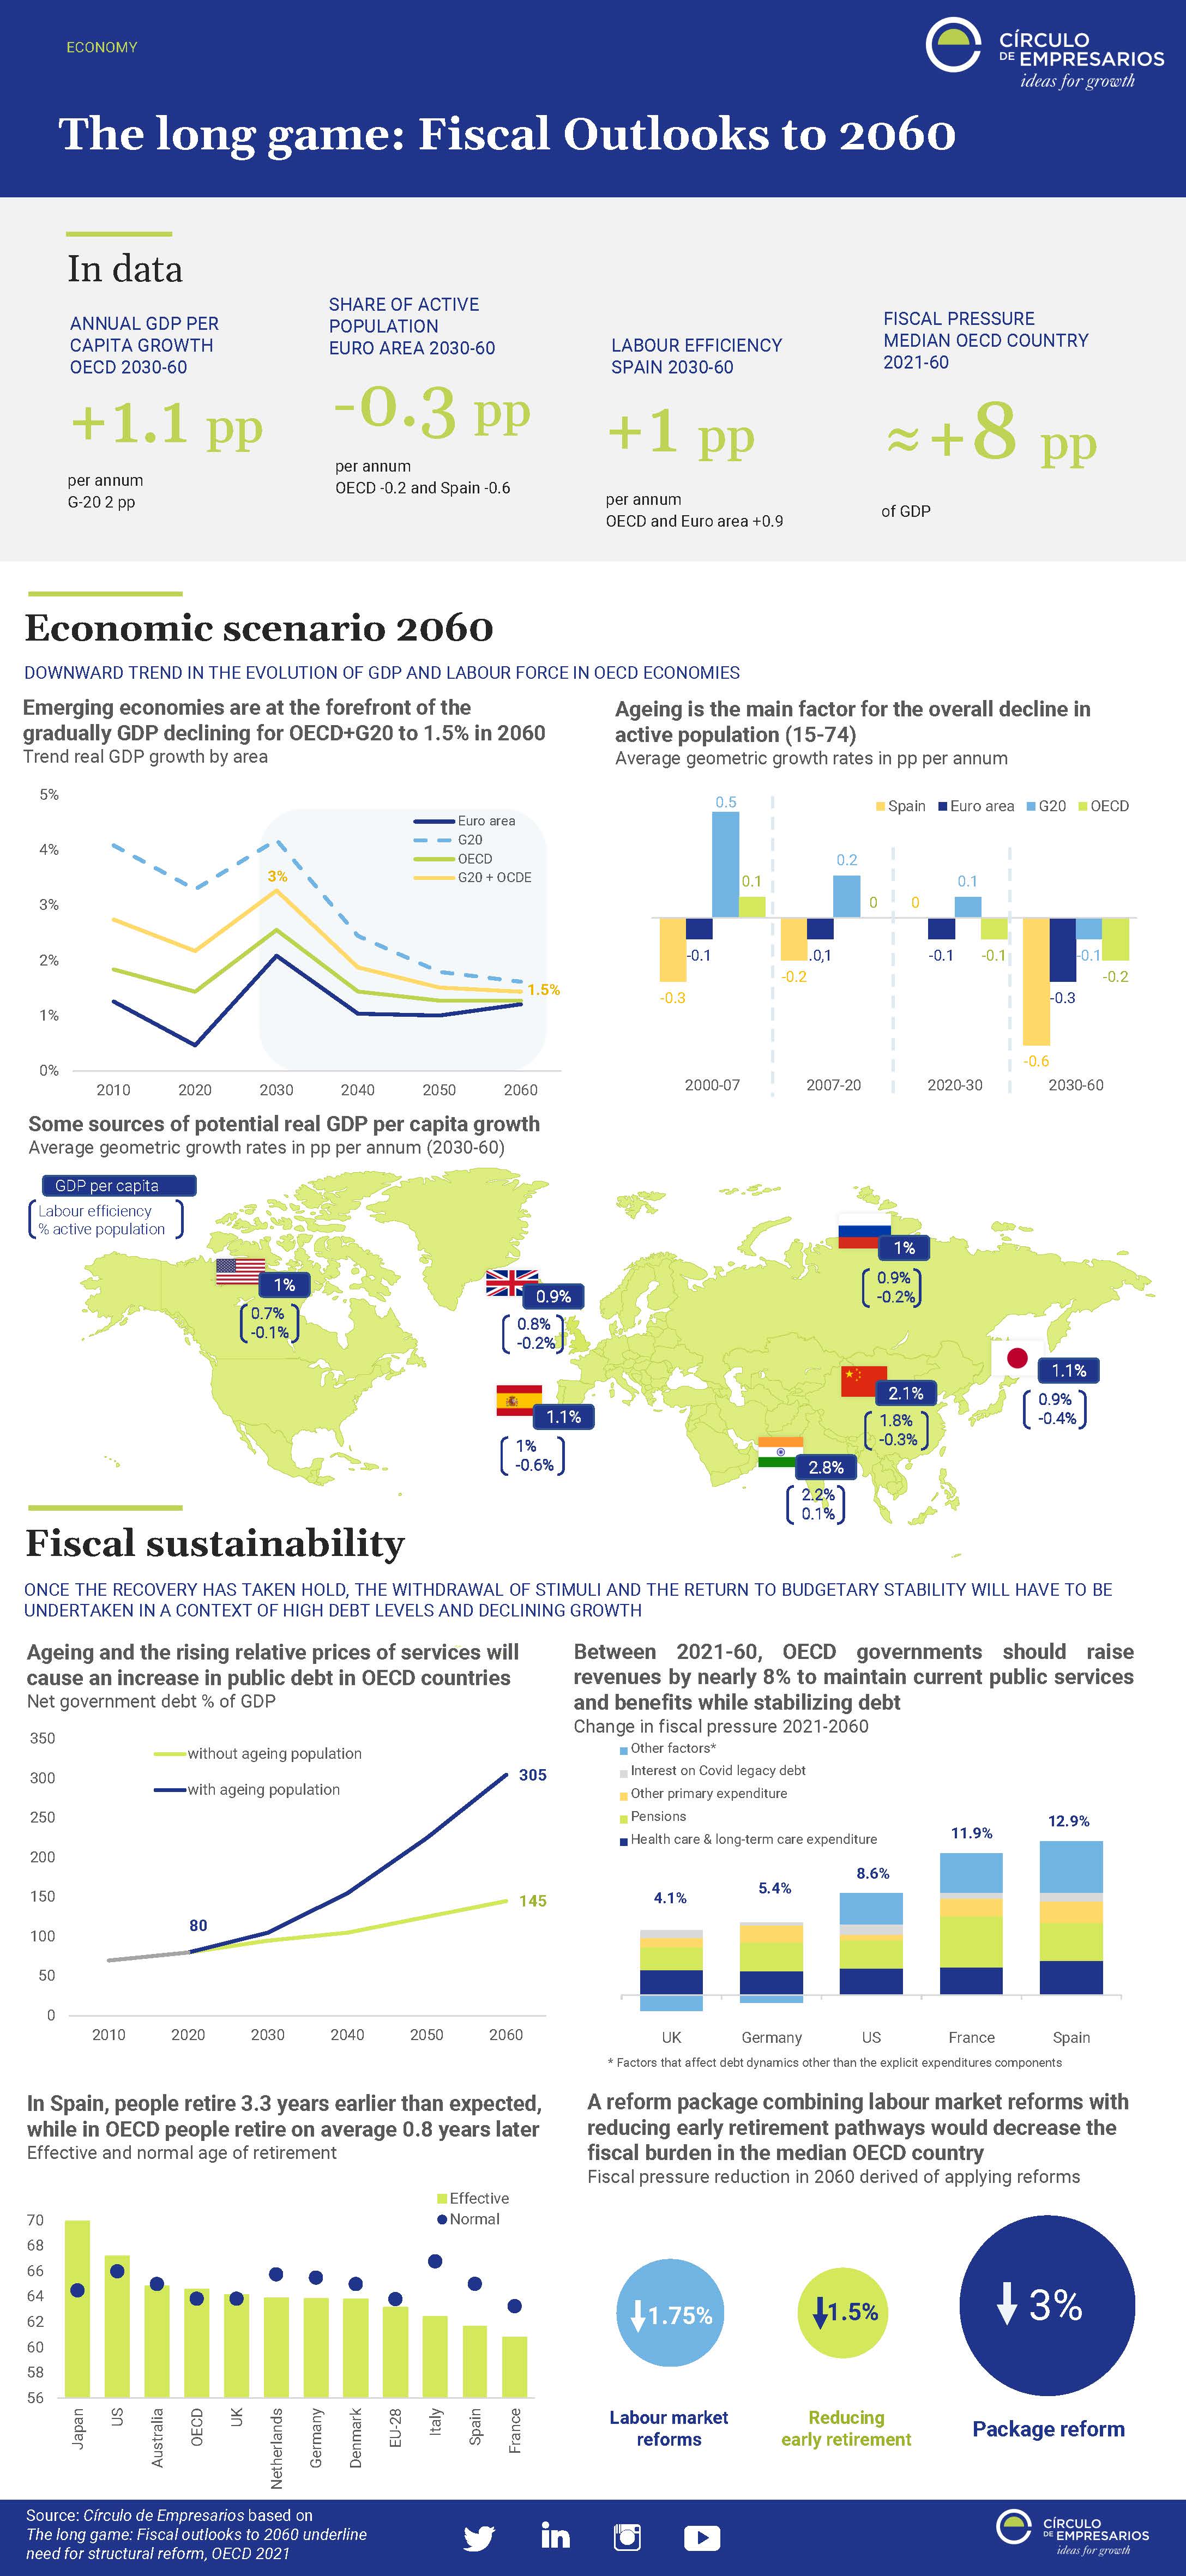 The-long-game-Fiscal-Outlooks-to-2060-Infographic-October-2021-Circulo-de-Empresarios